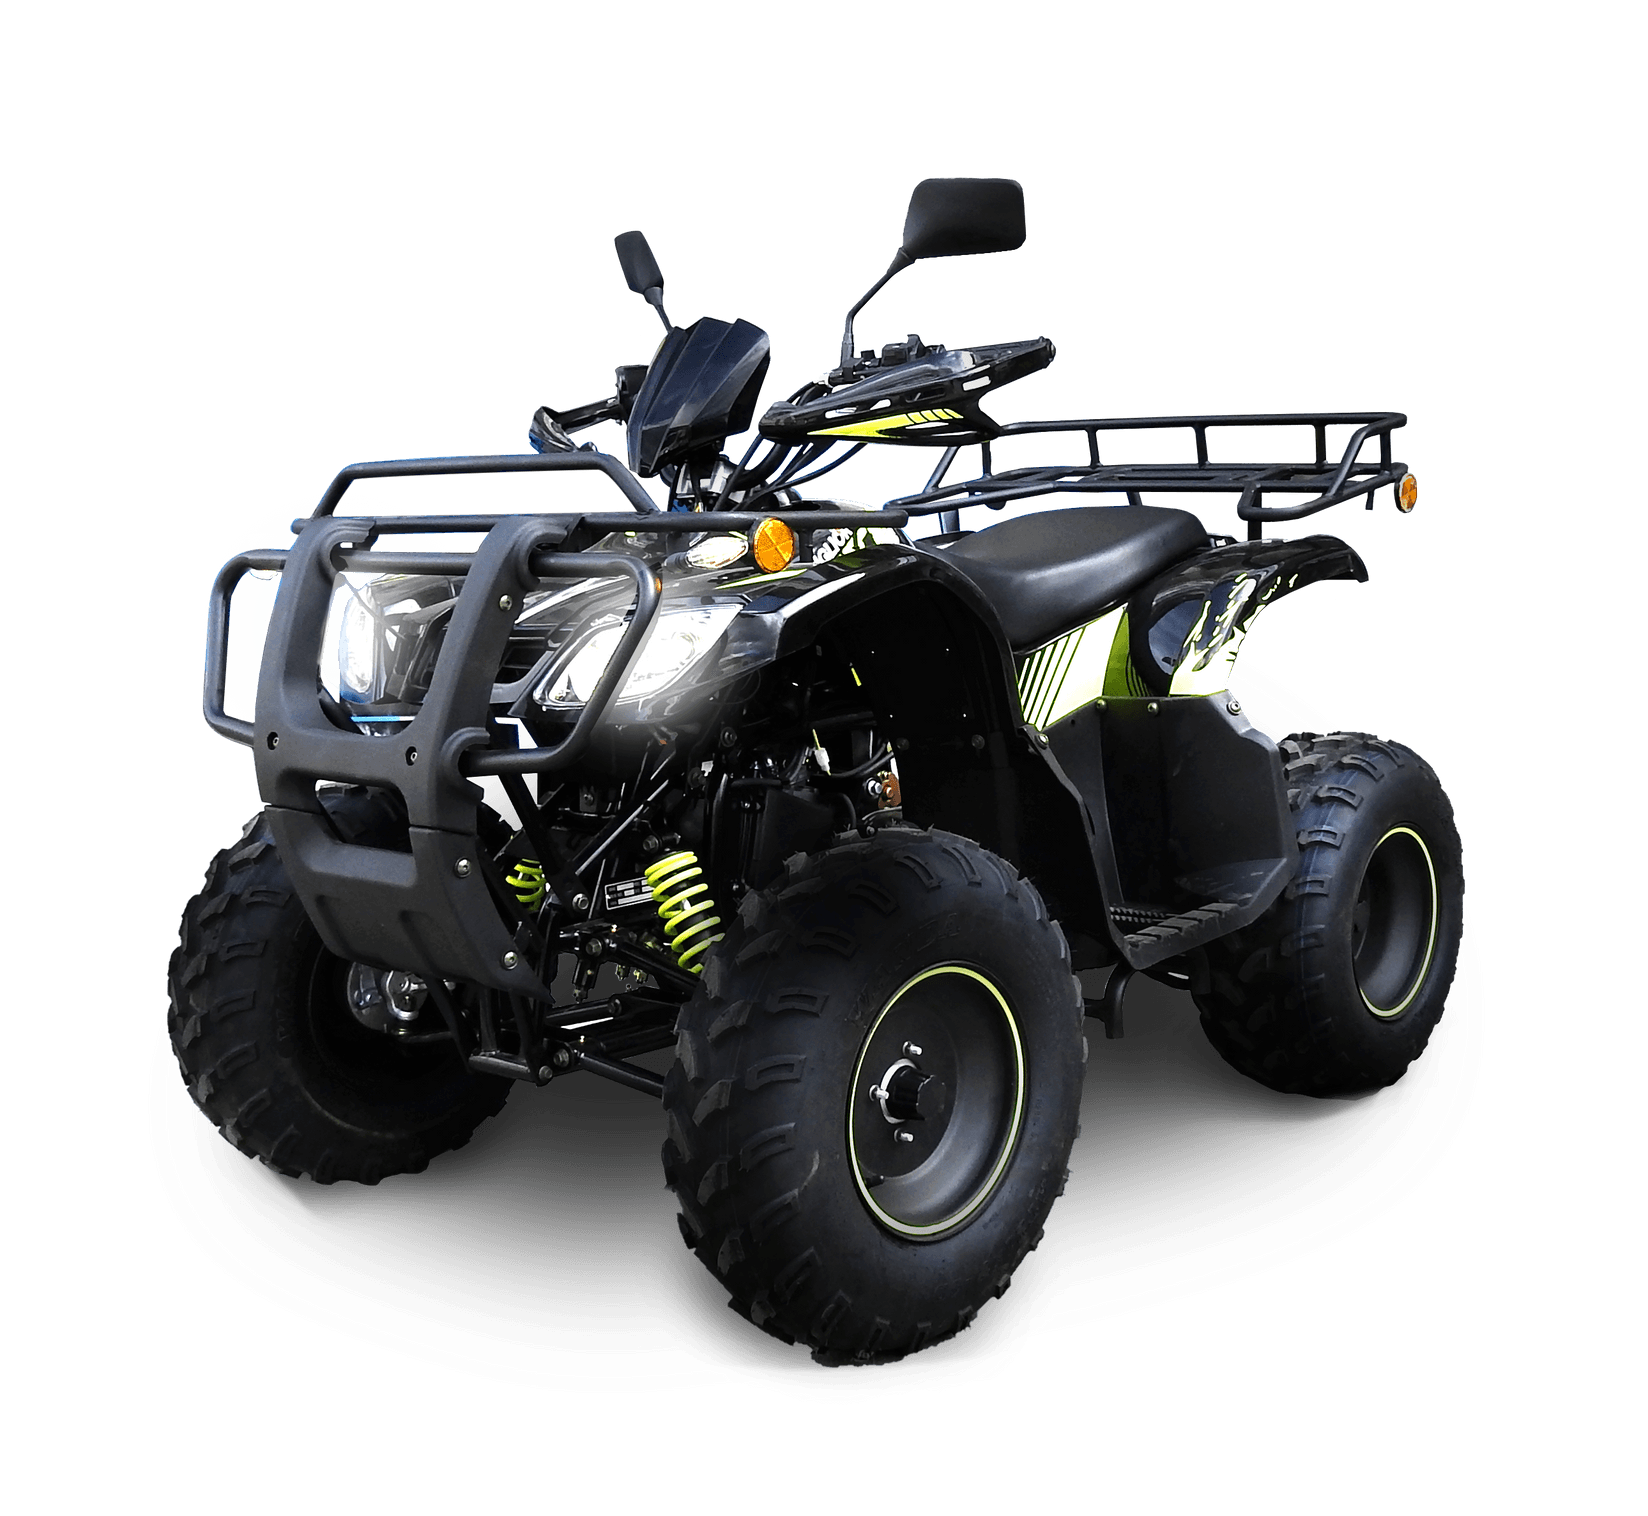 MIGLIORI ATV Four Wheeler 150